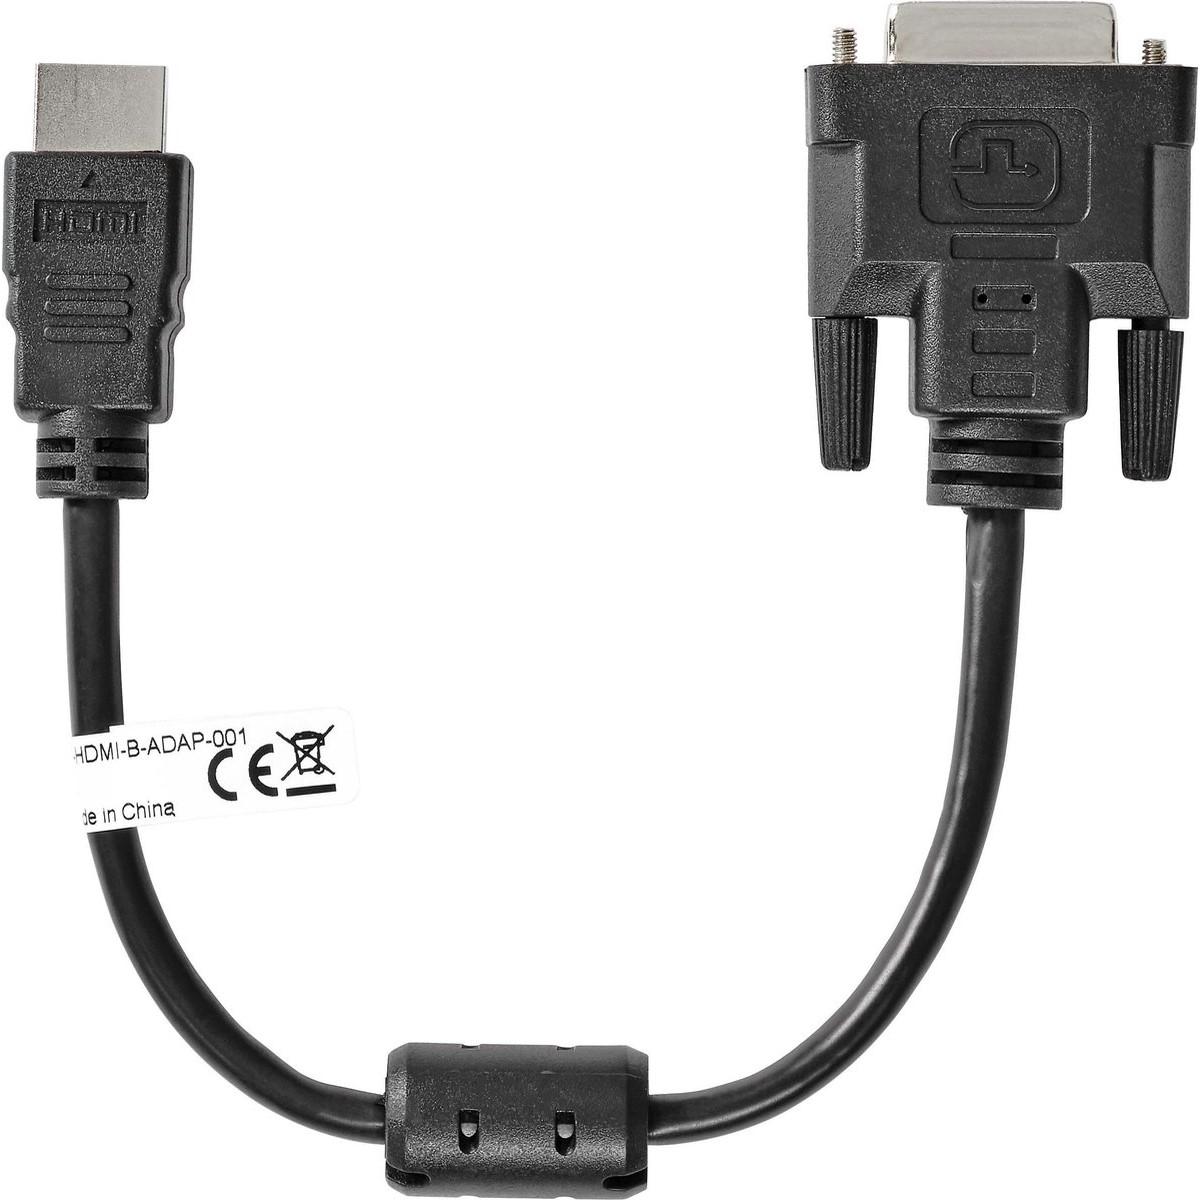 Câble Adaptateur HDMI à DVI de 1,8m - Bidirectionnel - Adaptateur